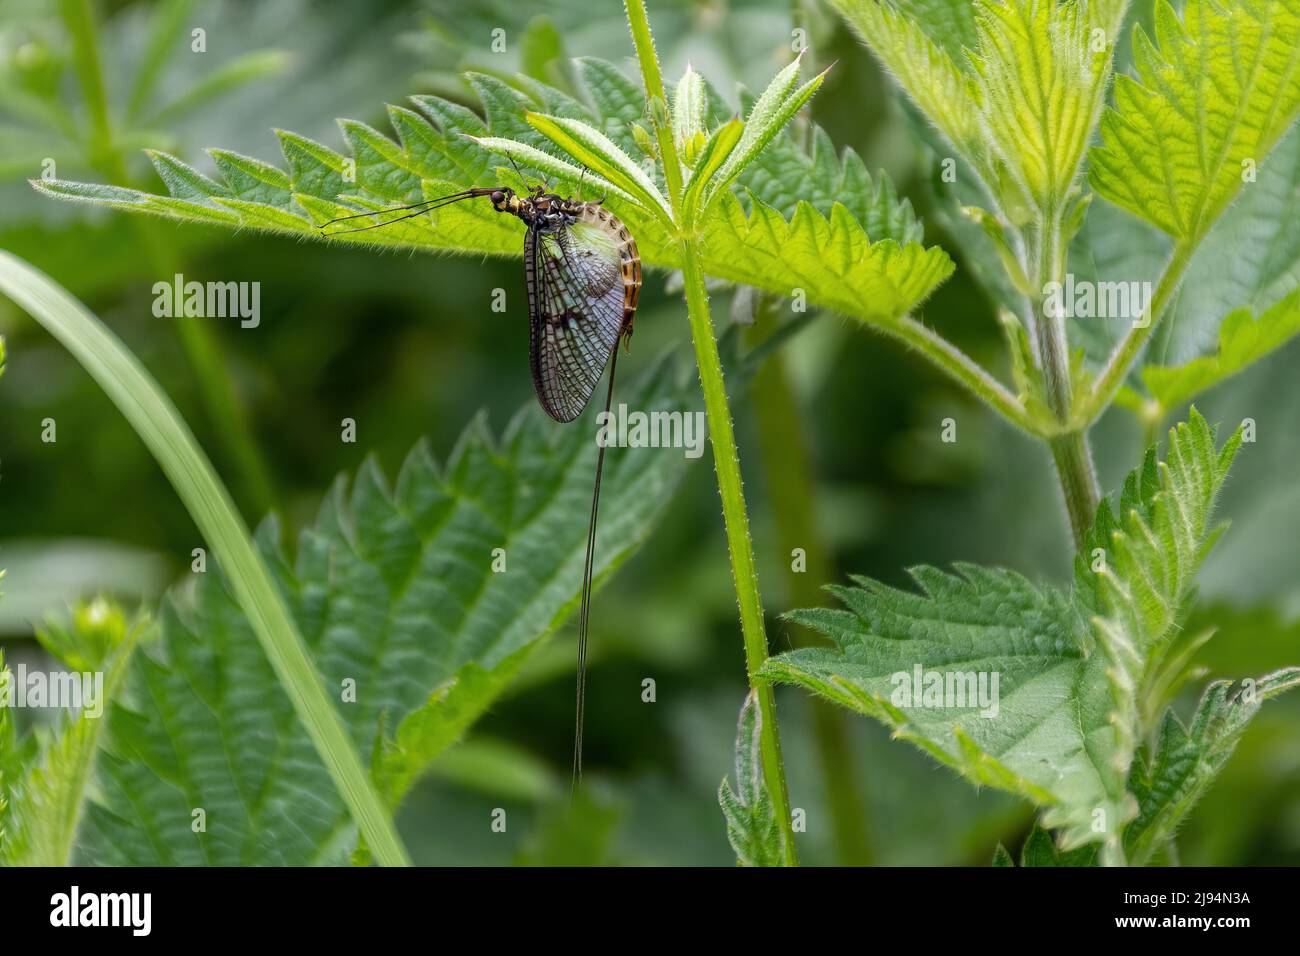 Common mayfly insect (Ephemera danica) among nettles during May, England, UK Stock Photo